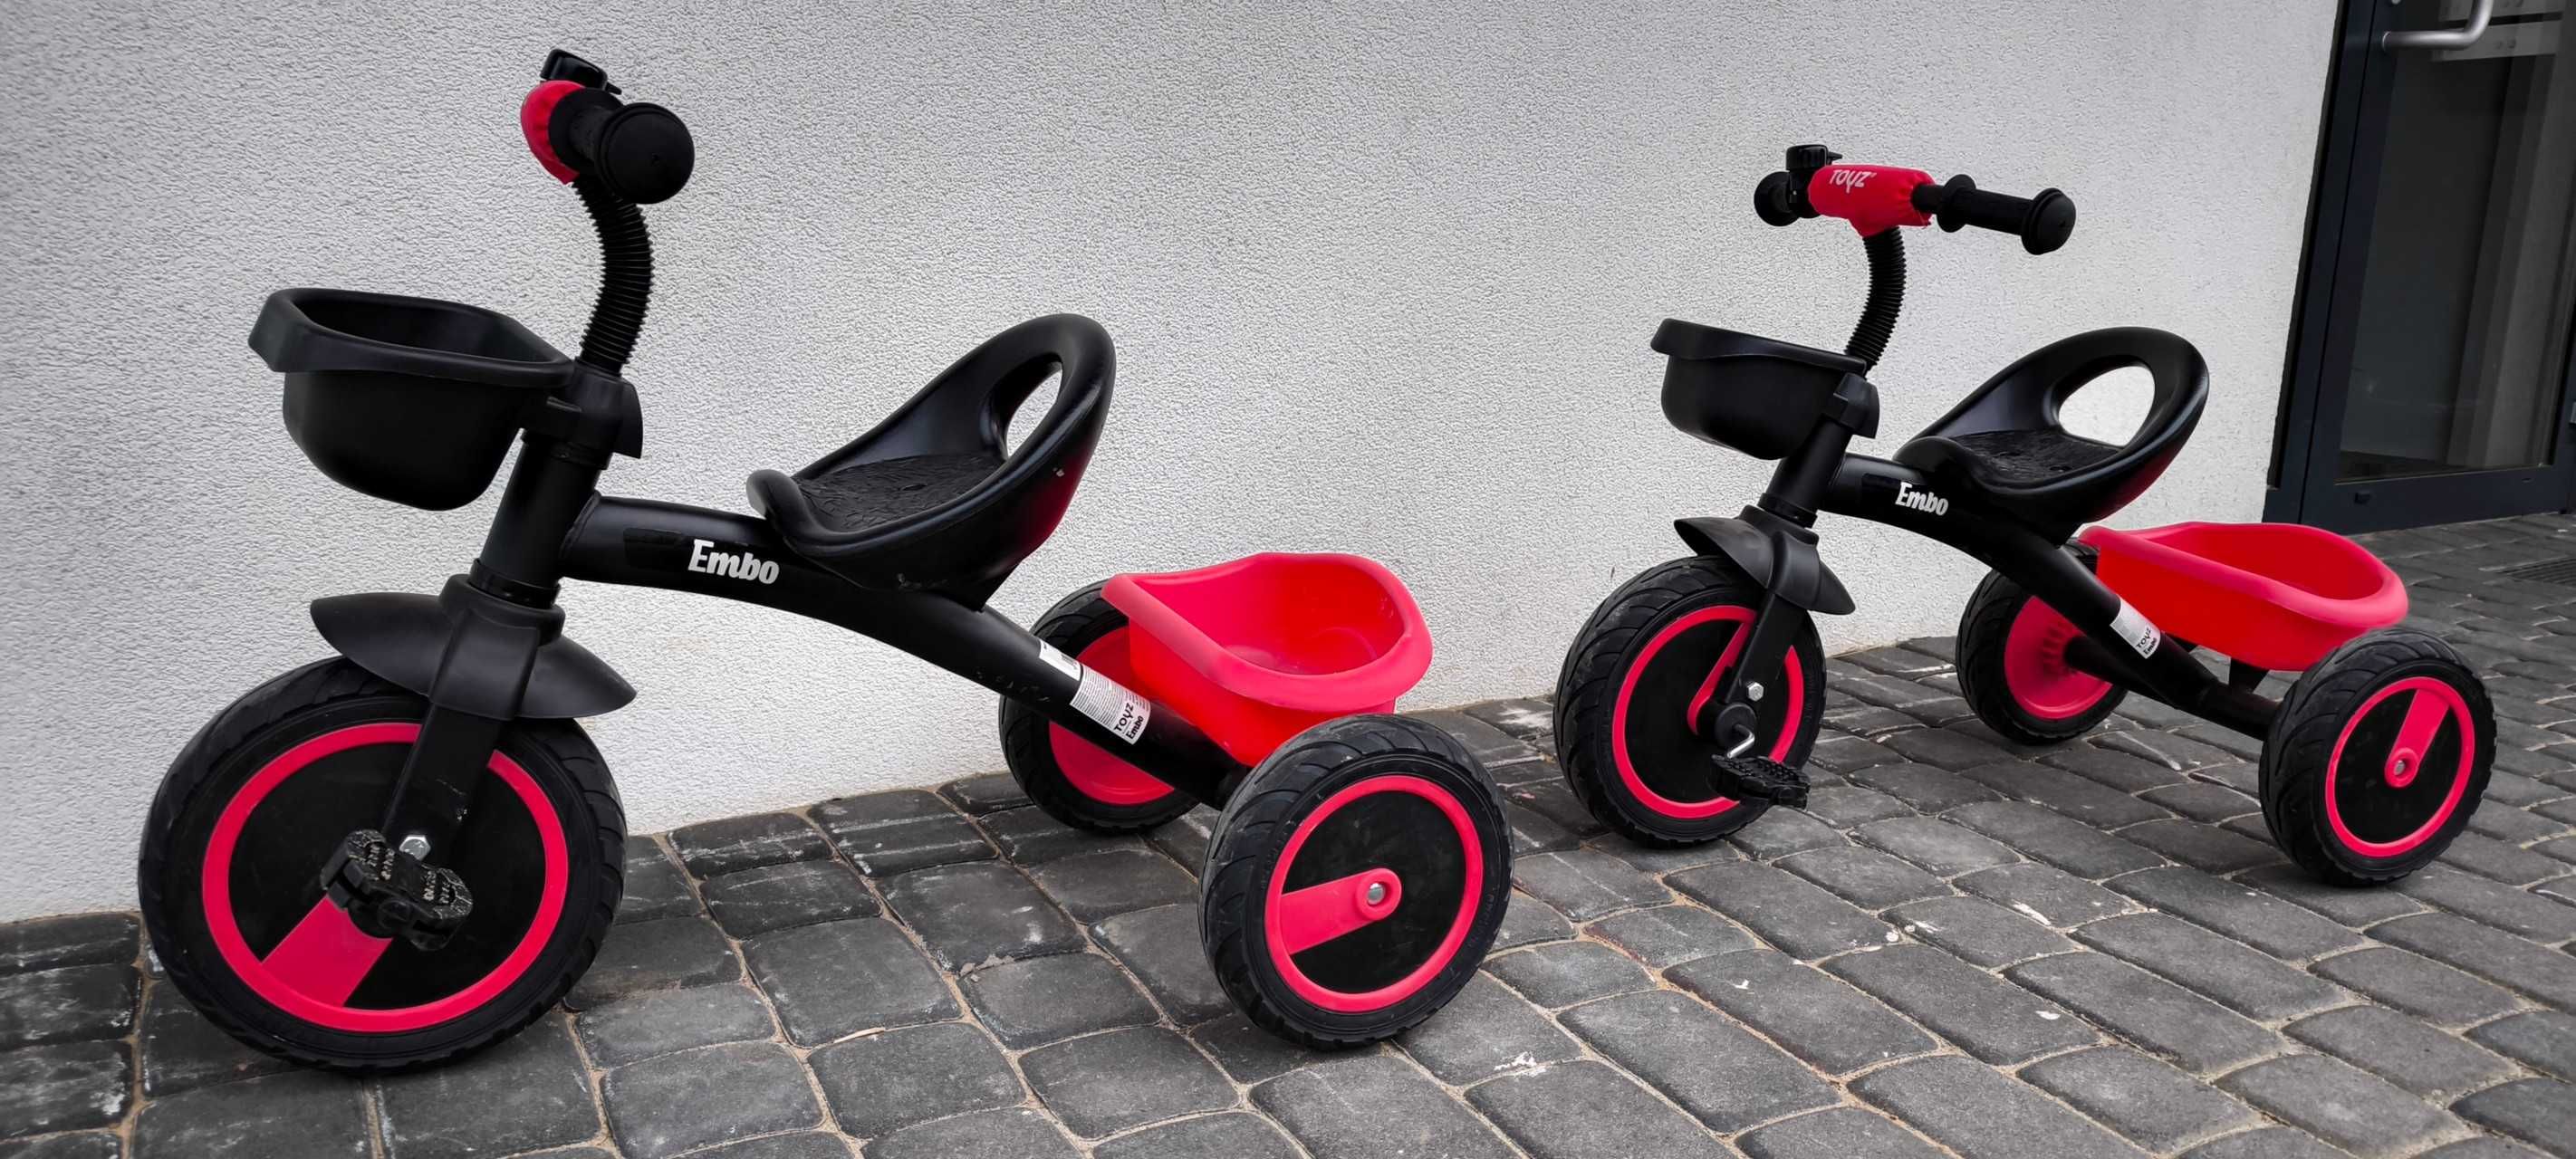 Rowerek Trójkołowy Toyz Embo (3-5 lat) rower dla dzieci